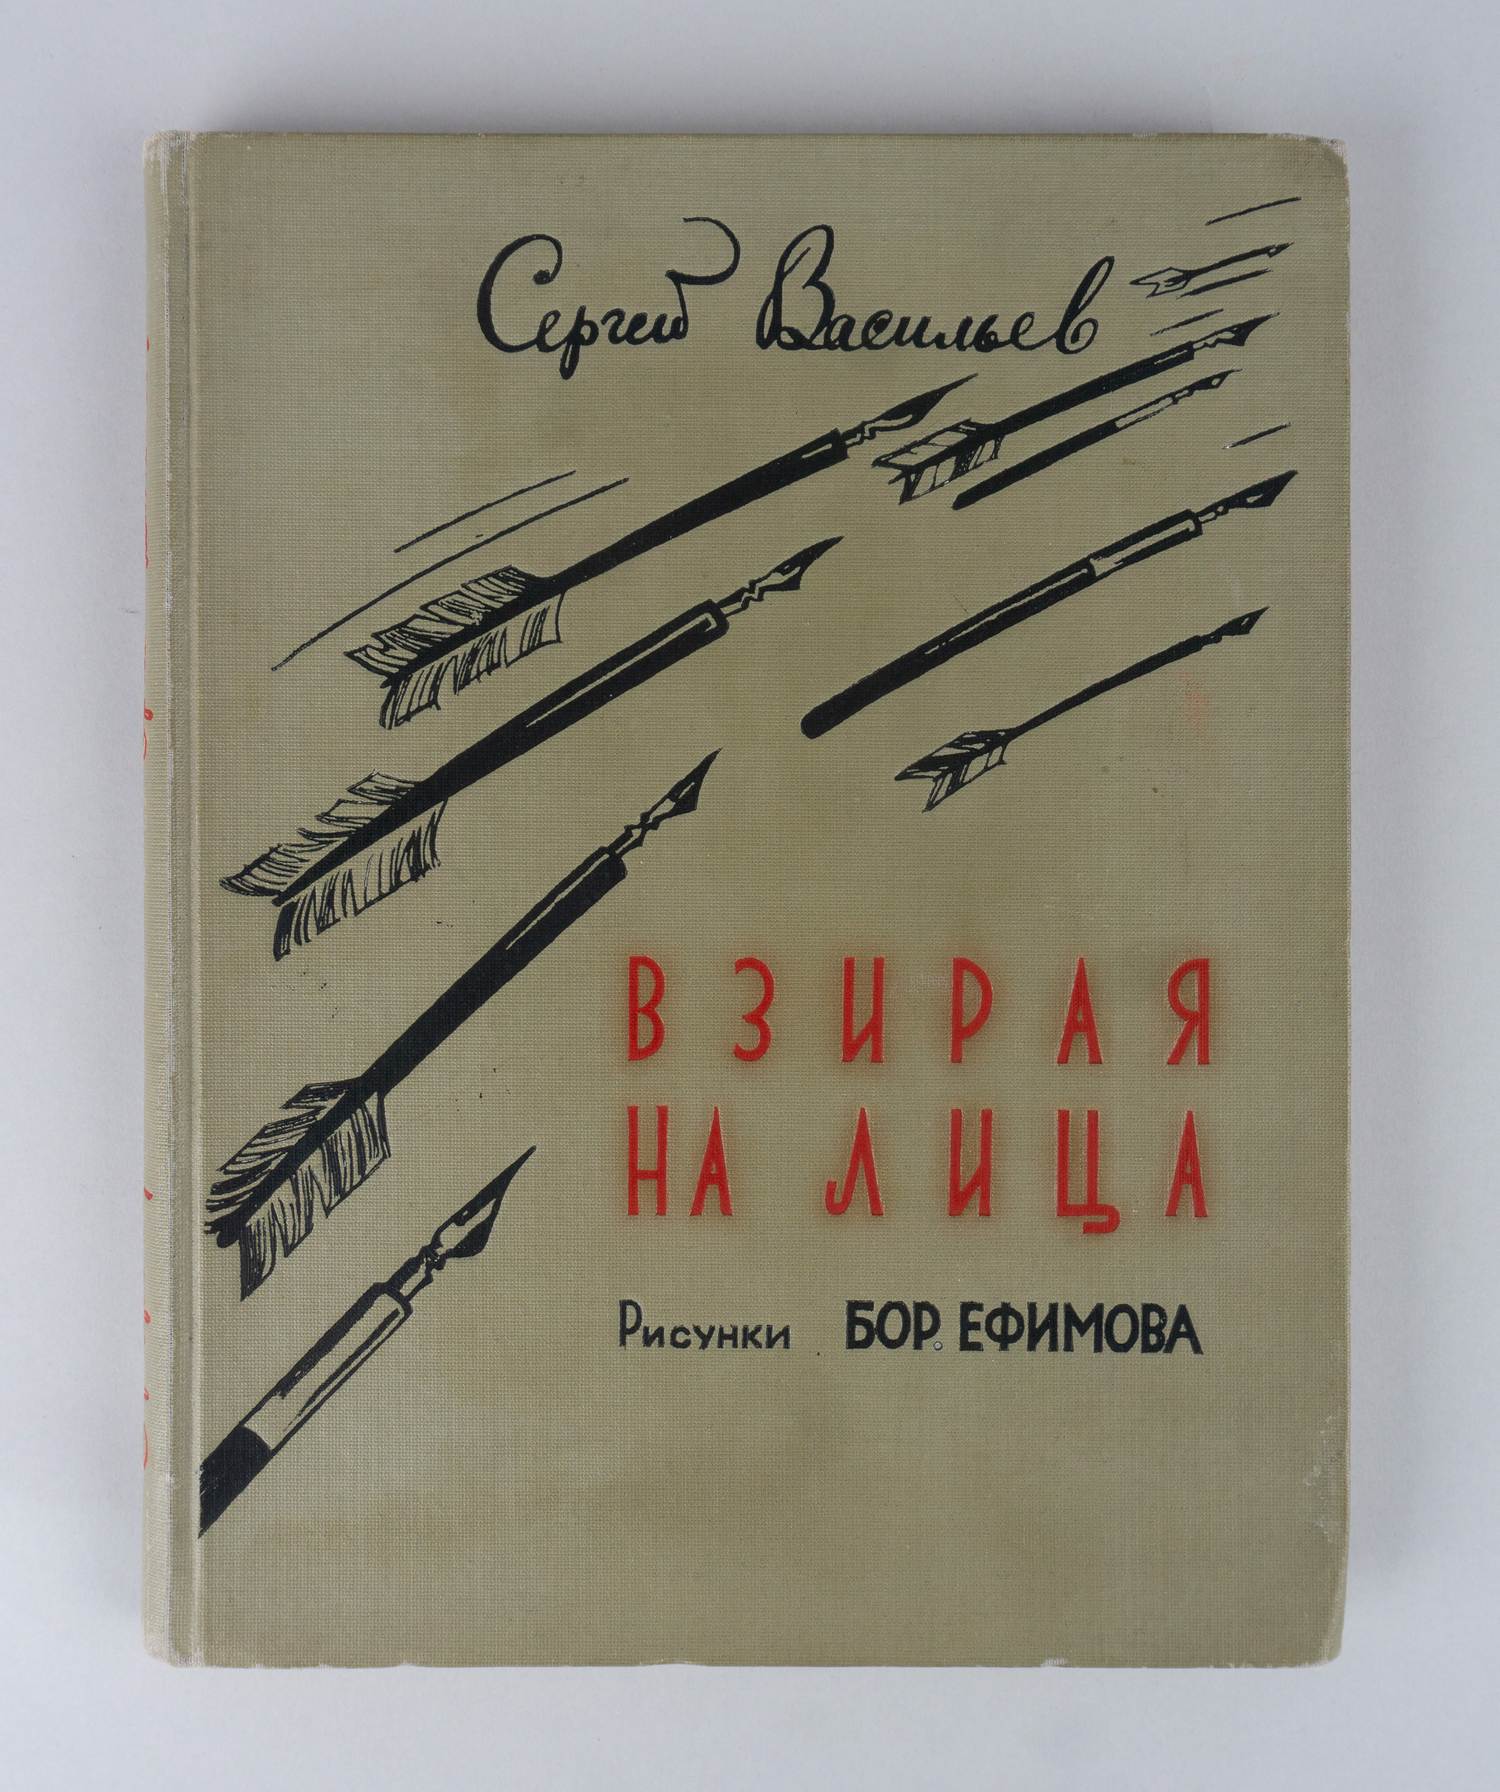 Васильев С. Взирая на лица. Сатирические стихи (М., 1954).